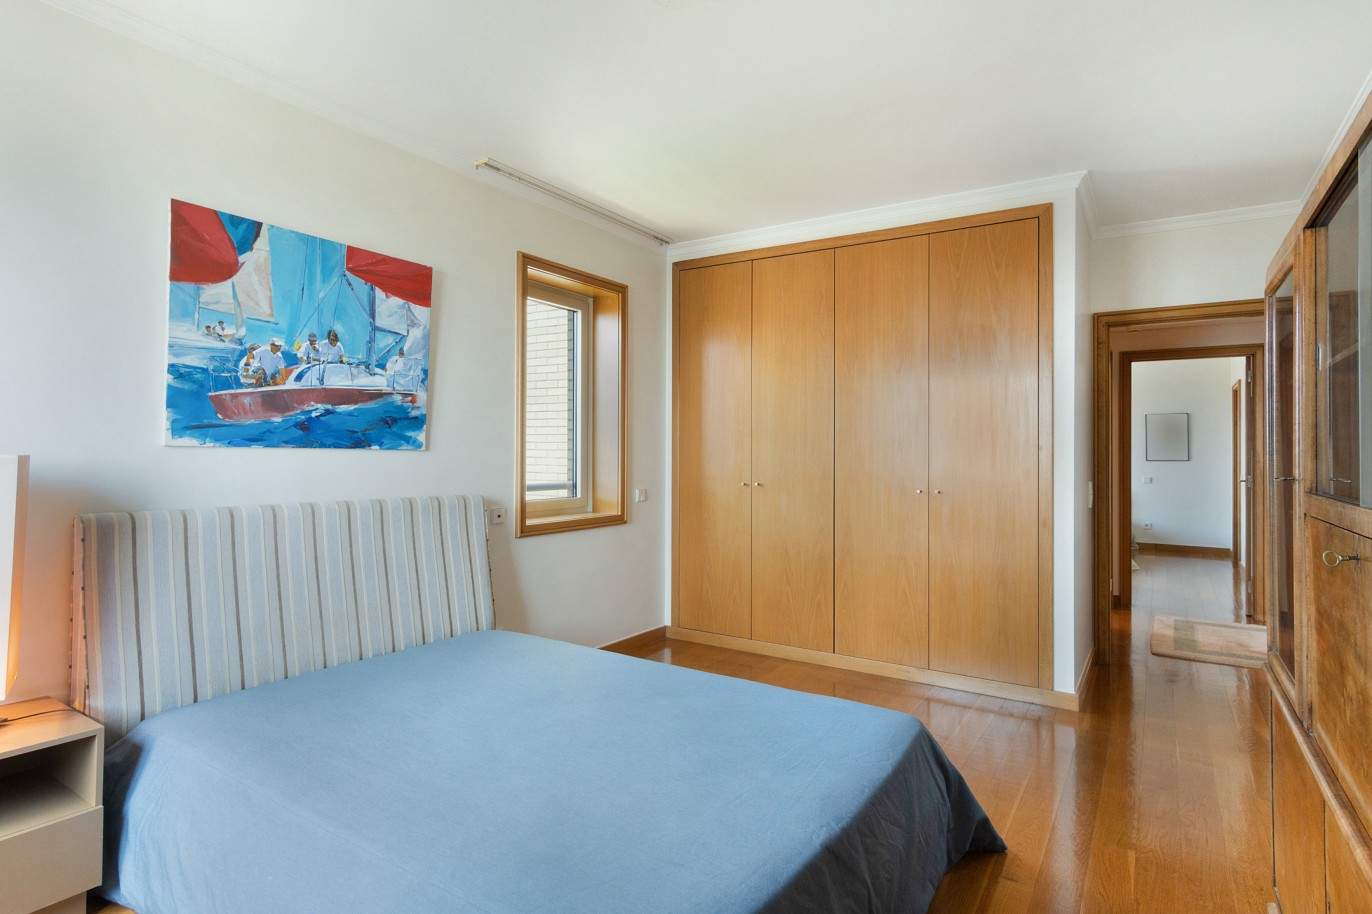 5 bedroom duplex flat with sea views, for sale, Pinhais da Foz, Porto, Portugal_203345